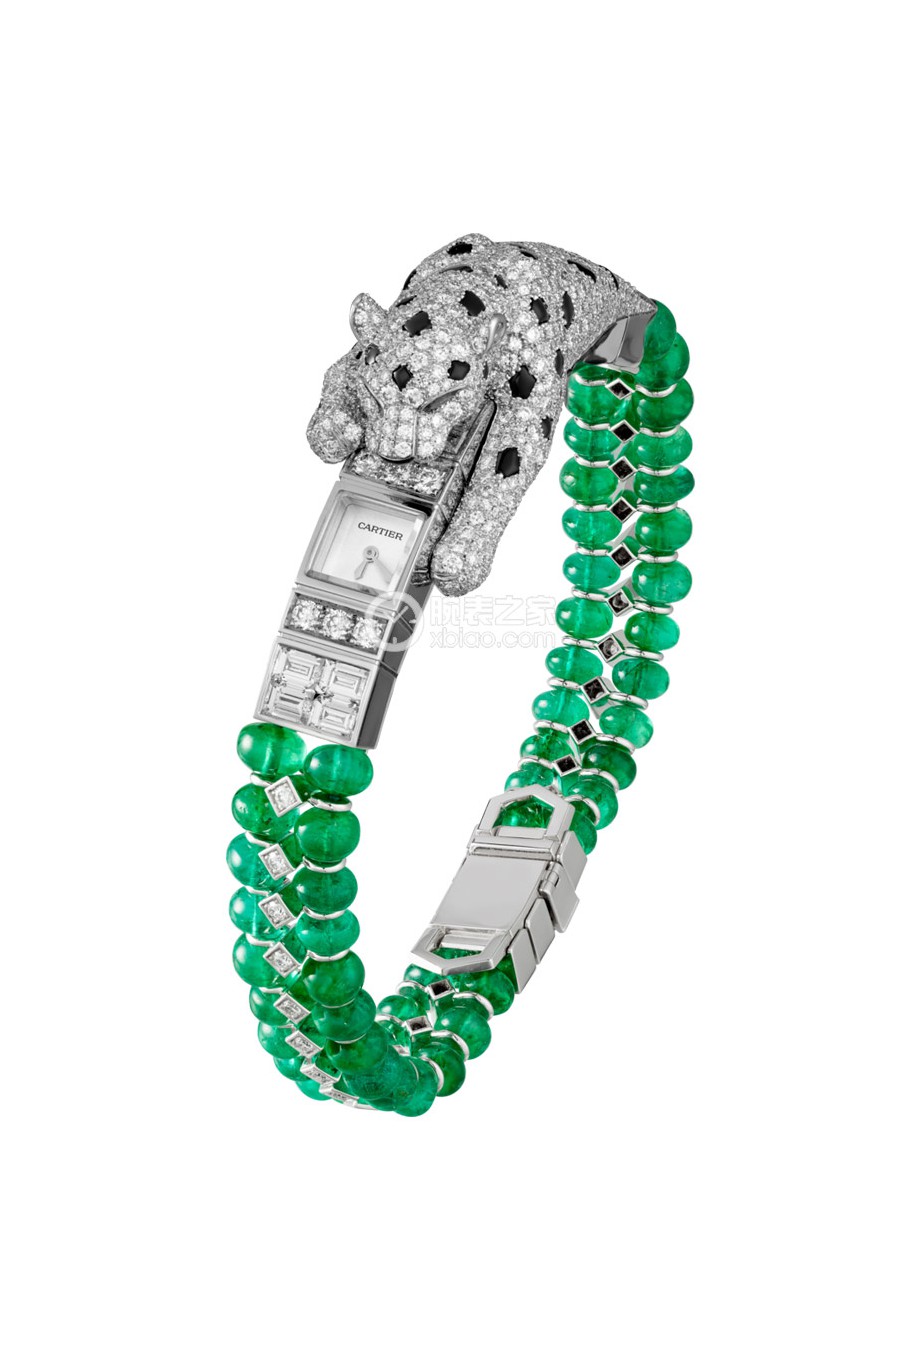 卡地亚创意宝石腕表系列HPI01141